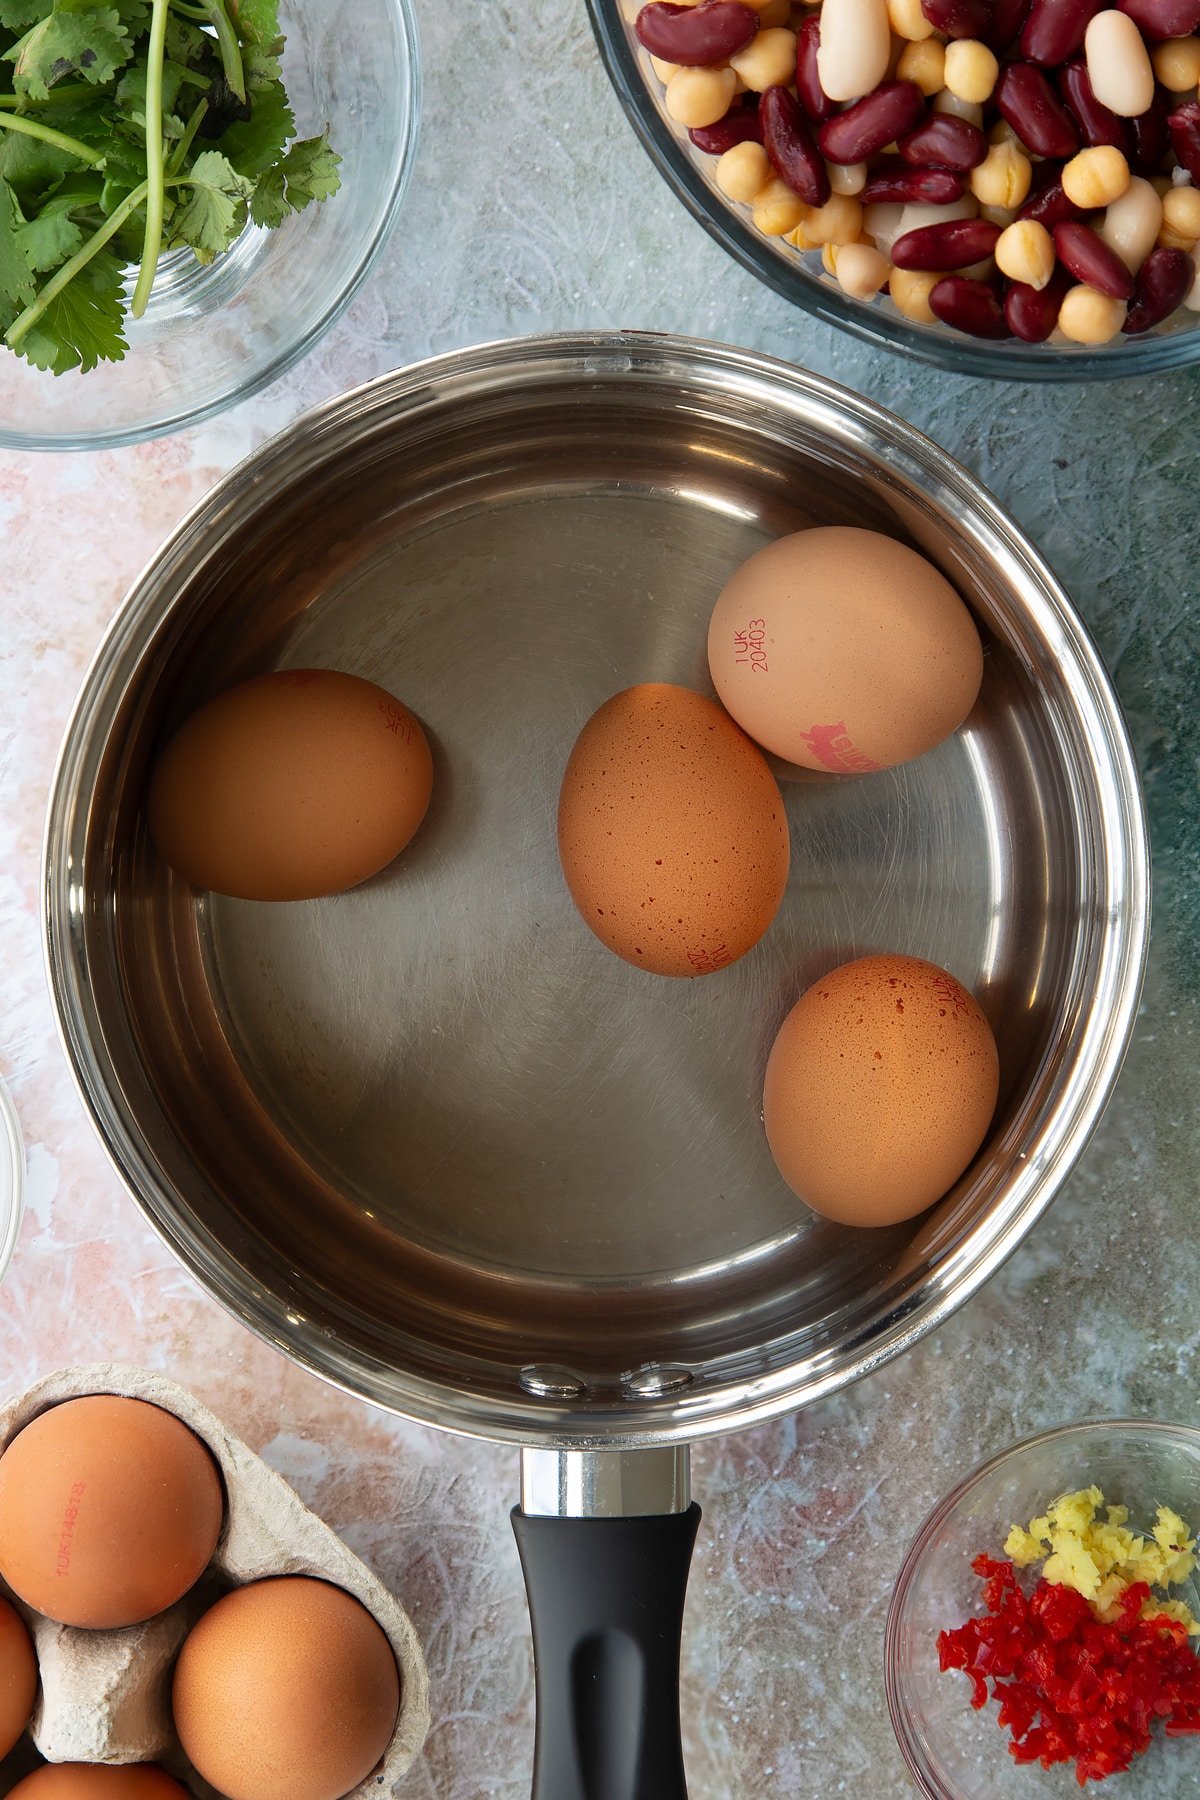 4 eggs in a saucepan.